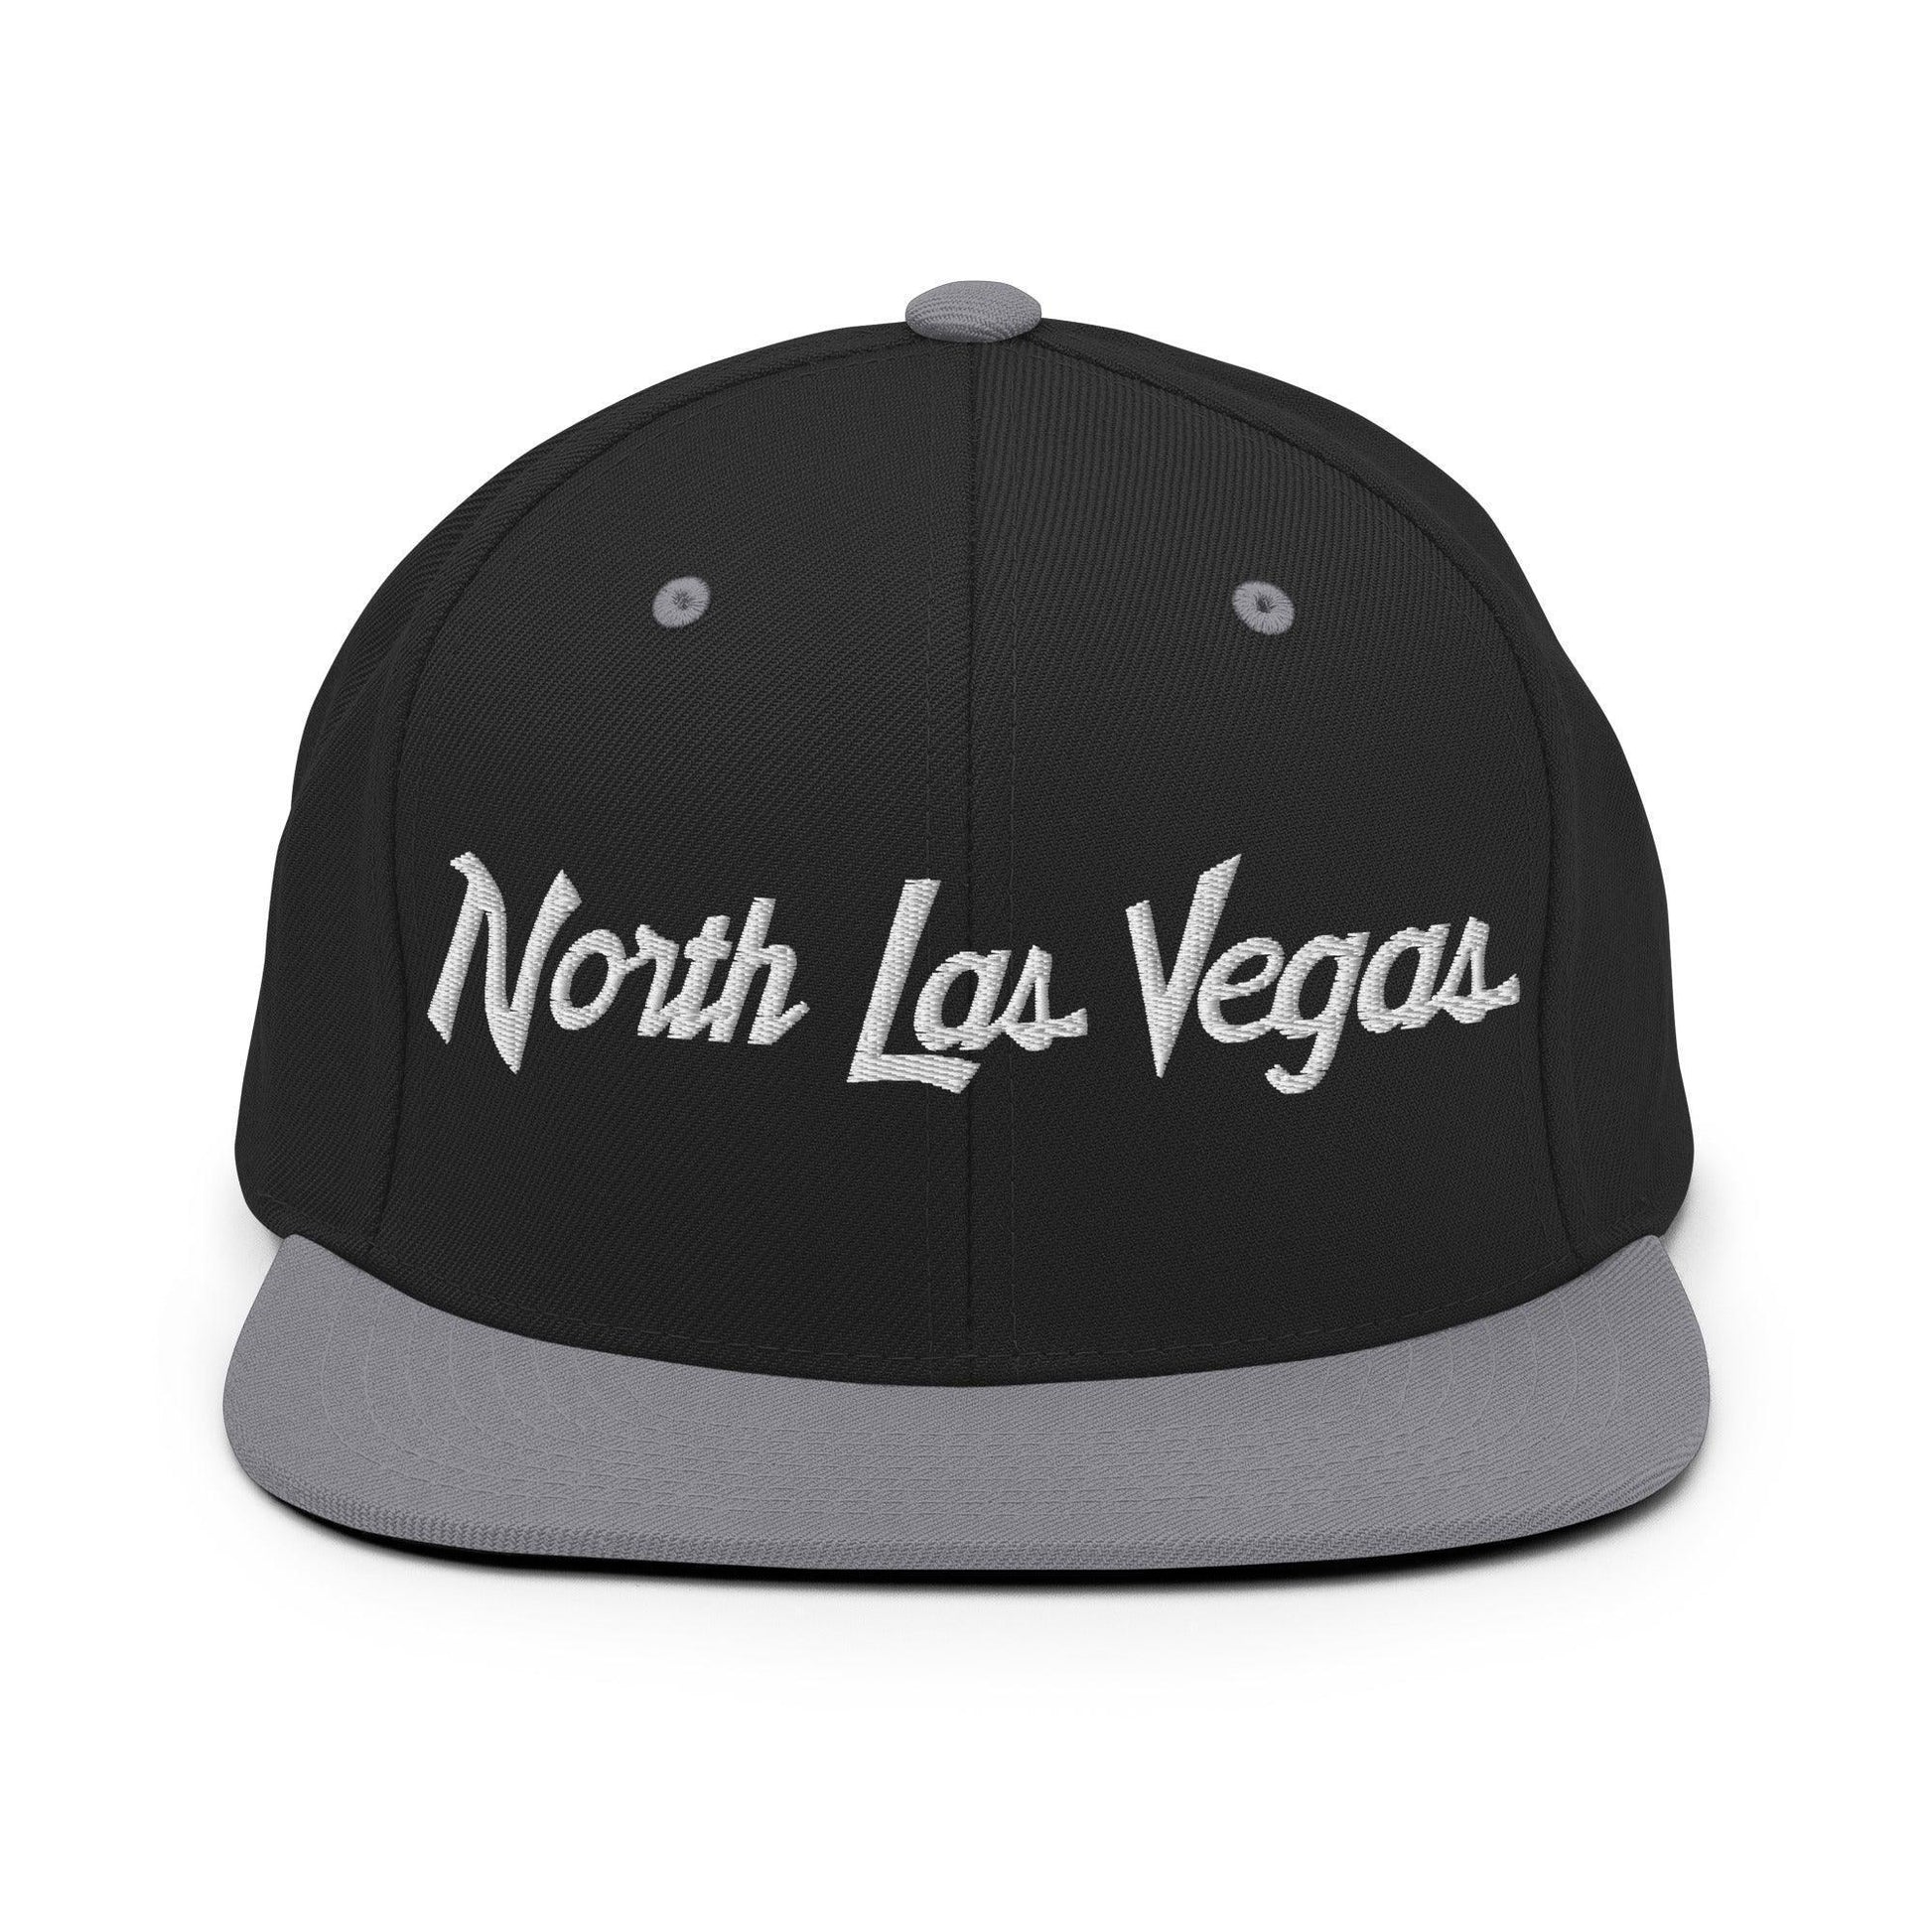 North Las Vegas Script Snapback Hat Black/ Silver